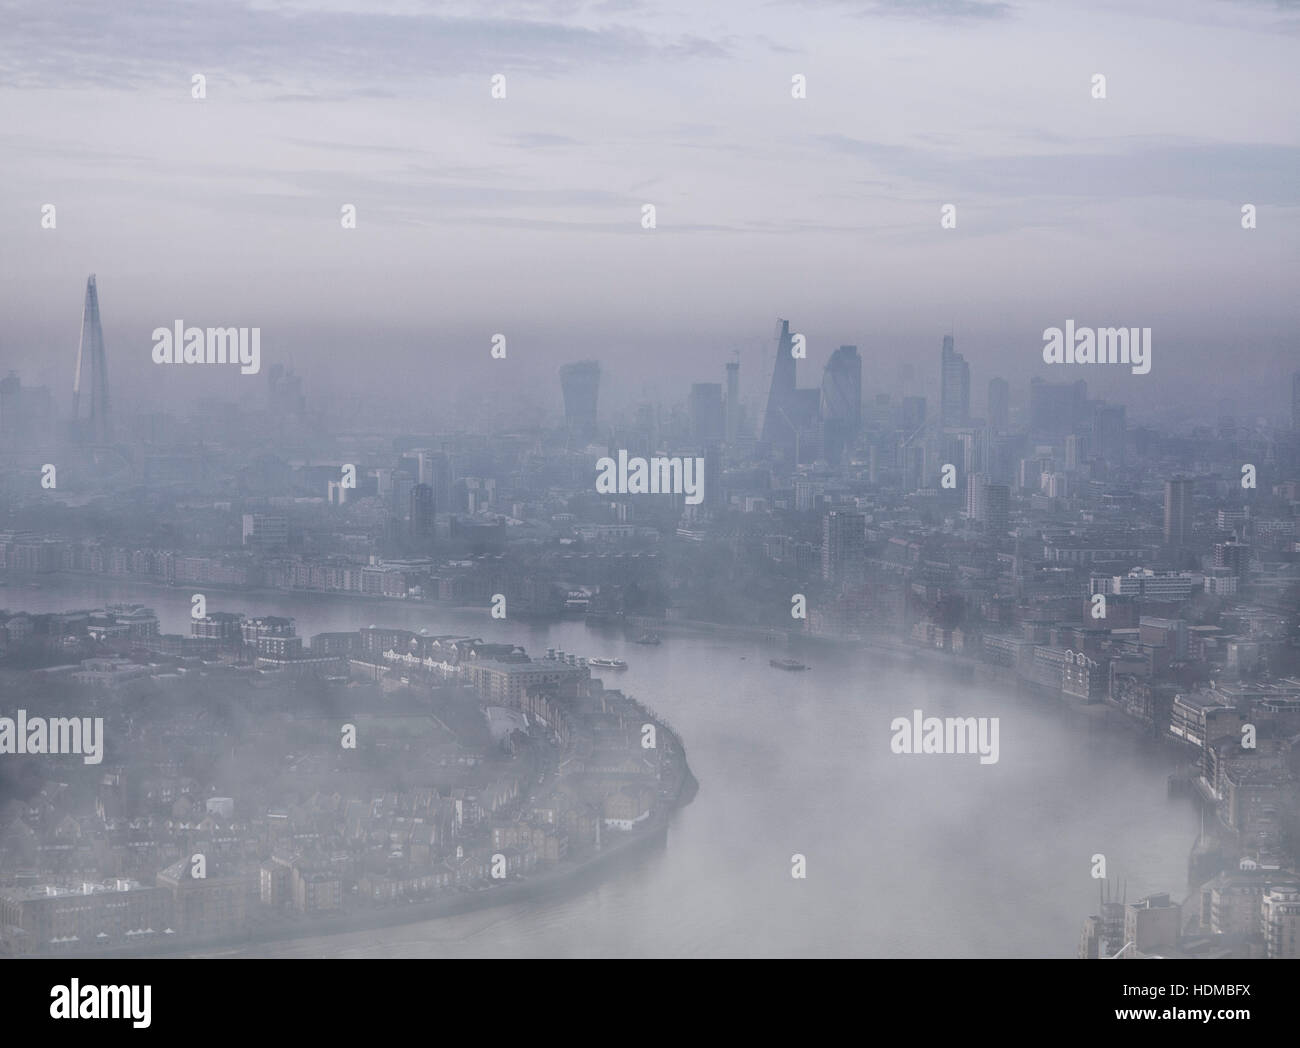 La haute finance sur un jour brumeux la City de Londres, le quartier financier de Canary Wharf dans les Docklands au crépuscule Banque D'Images